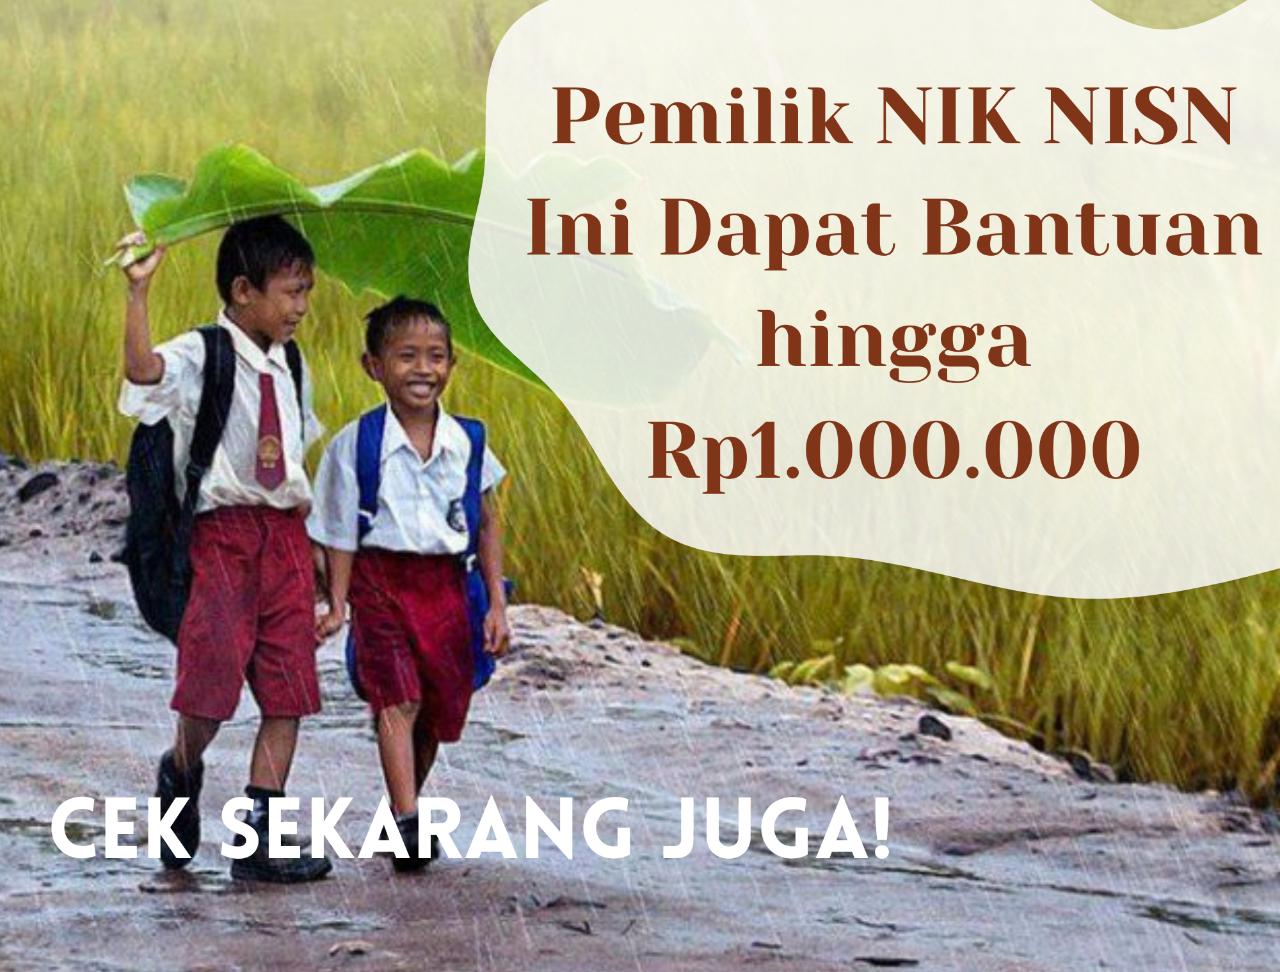 Pemilik NIK NISN Ini Dapat Bantuan hingga Rp1.000.000, Cek Penerimanya Melalui pip.kemdikbud.go.id